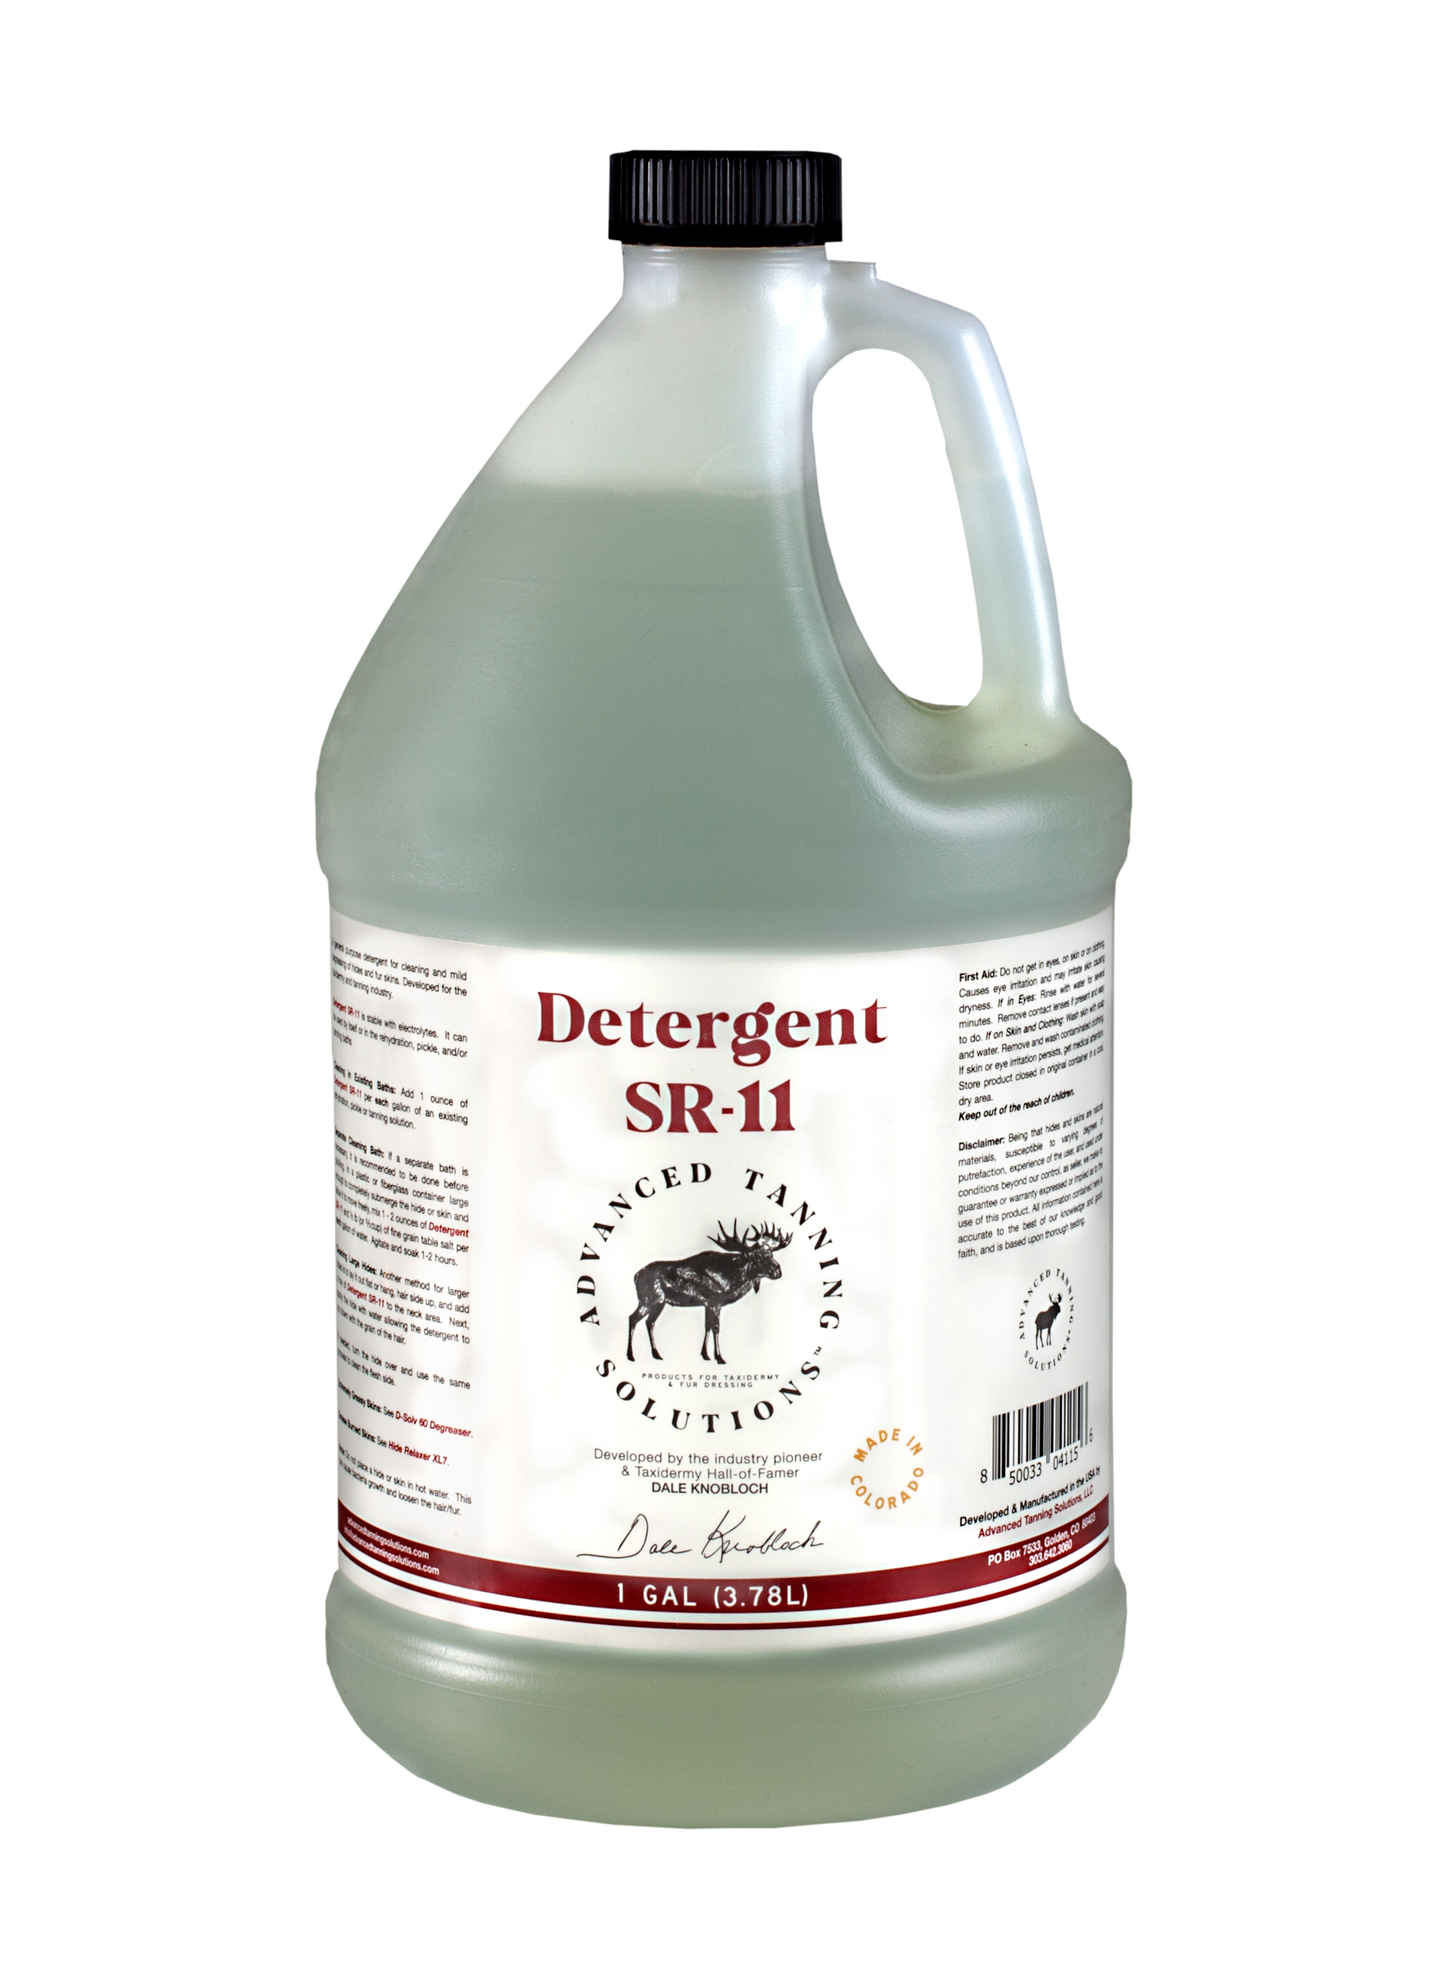 Detergent SR-11